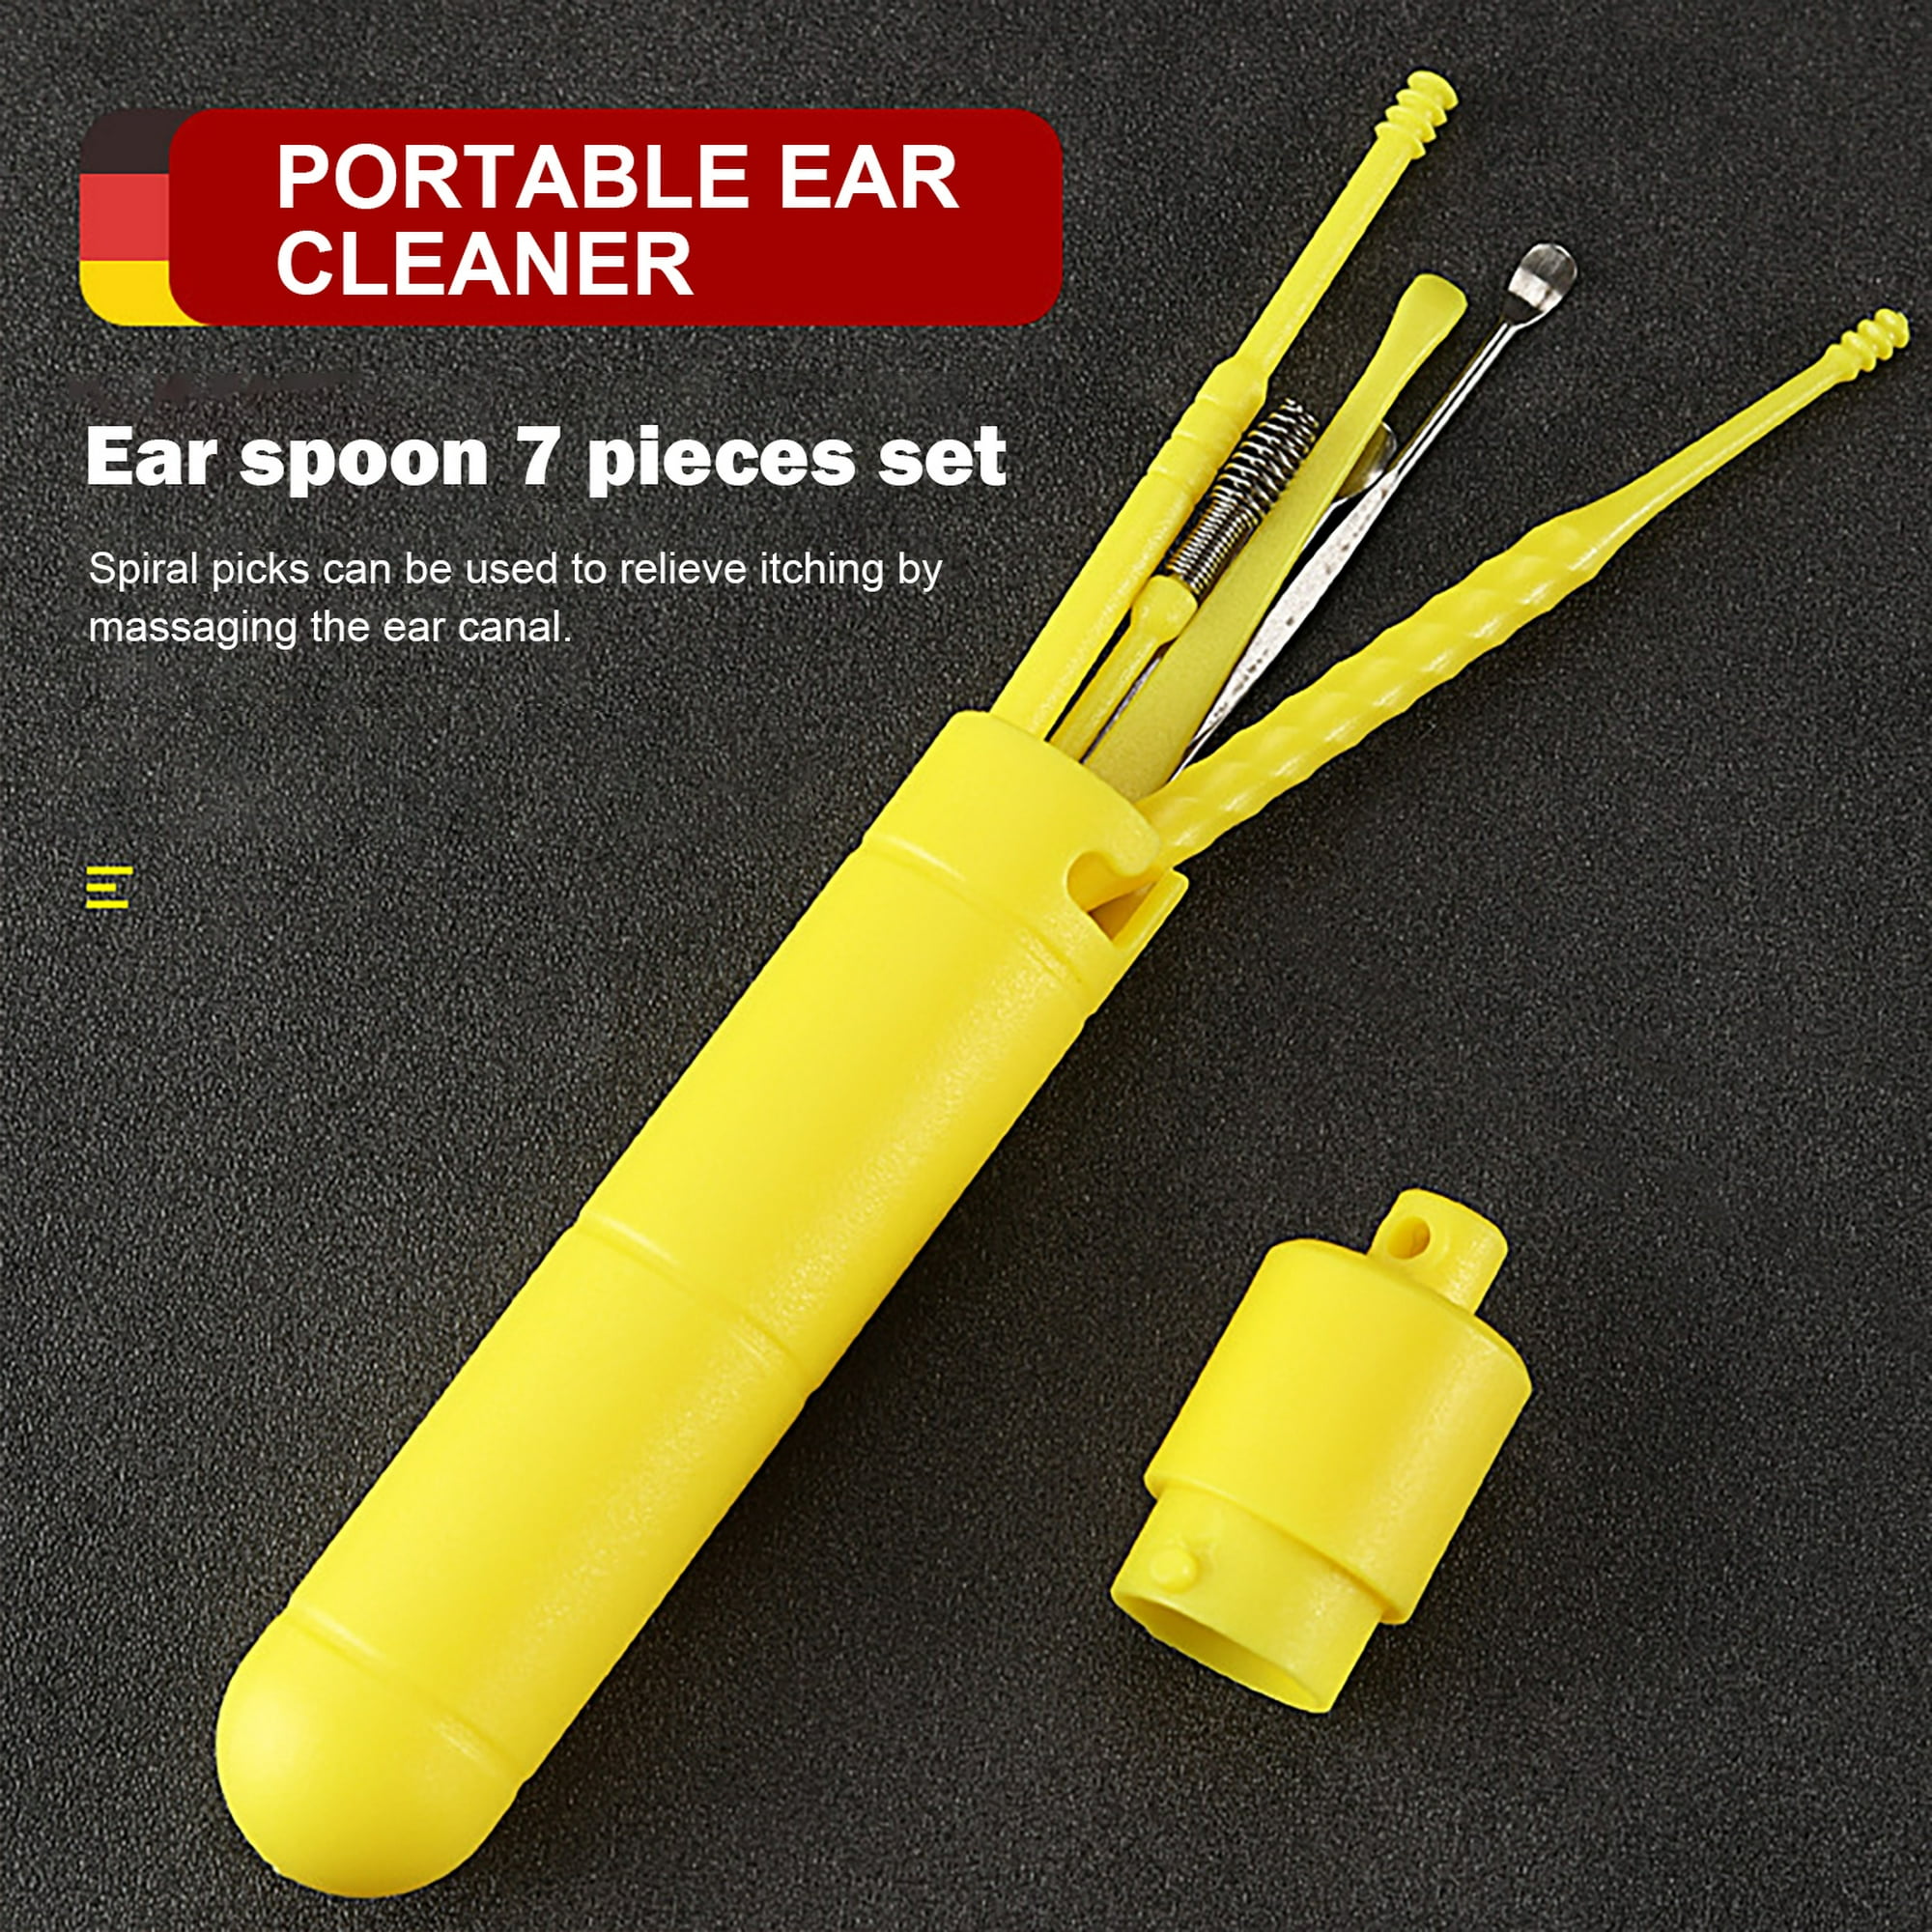  Juego de 5 púas para oídos, juego de herramientas de limpieza  de oídos, kit de eliminación de cera de oído con una caja de almacenamiento  y cepillo de limpieza pequeño 